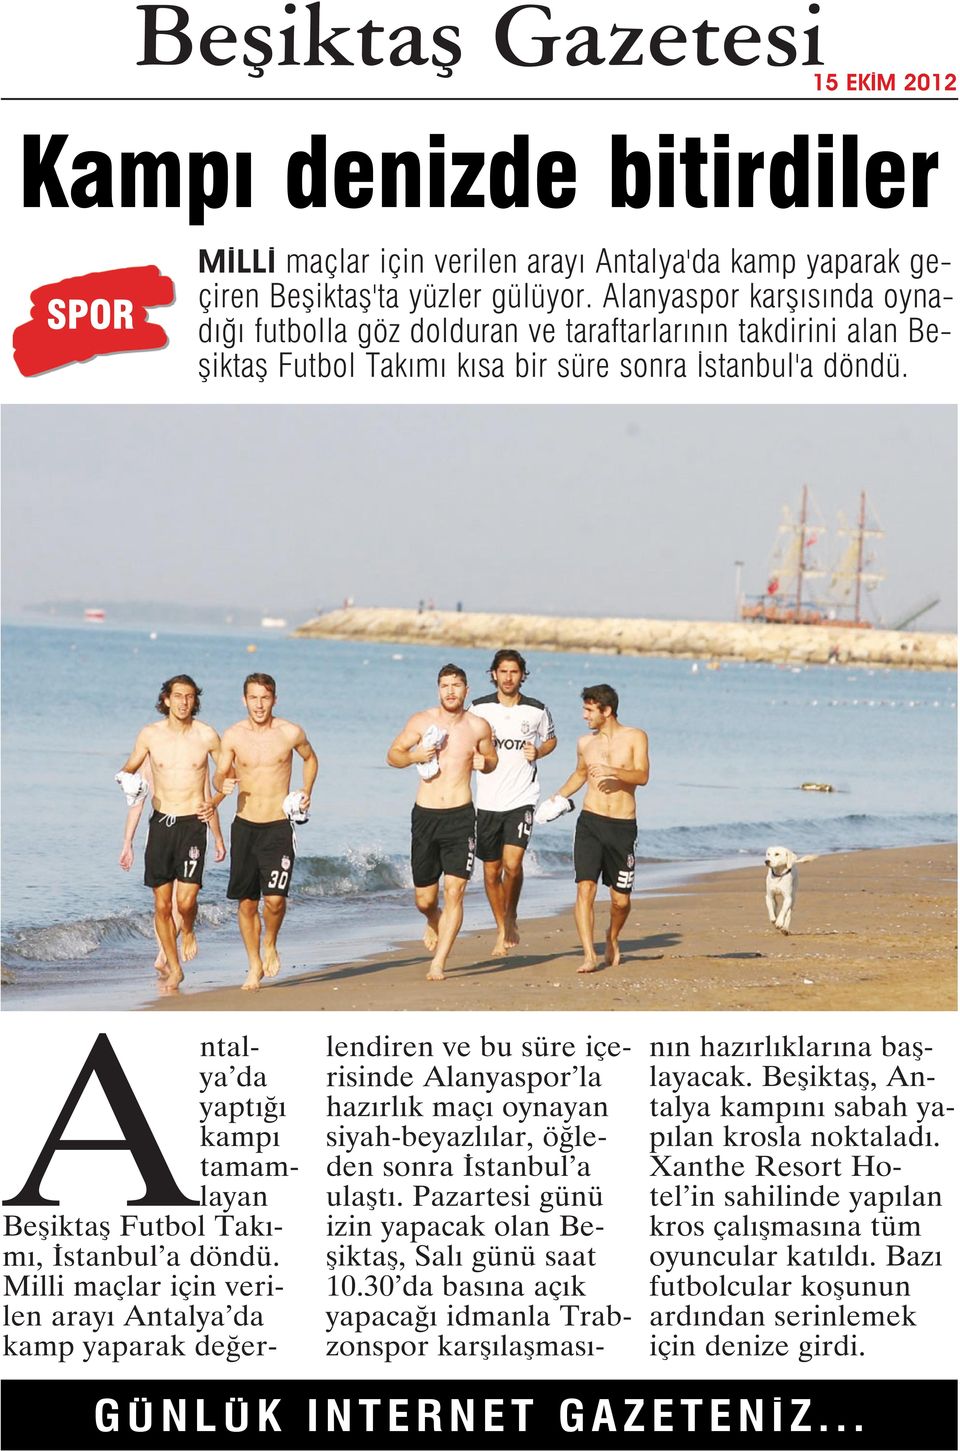 Antalya da yaptığı kampı tamamlayan Beşiktaş Futbol Takımı, İstanbul a döndü.